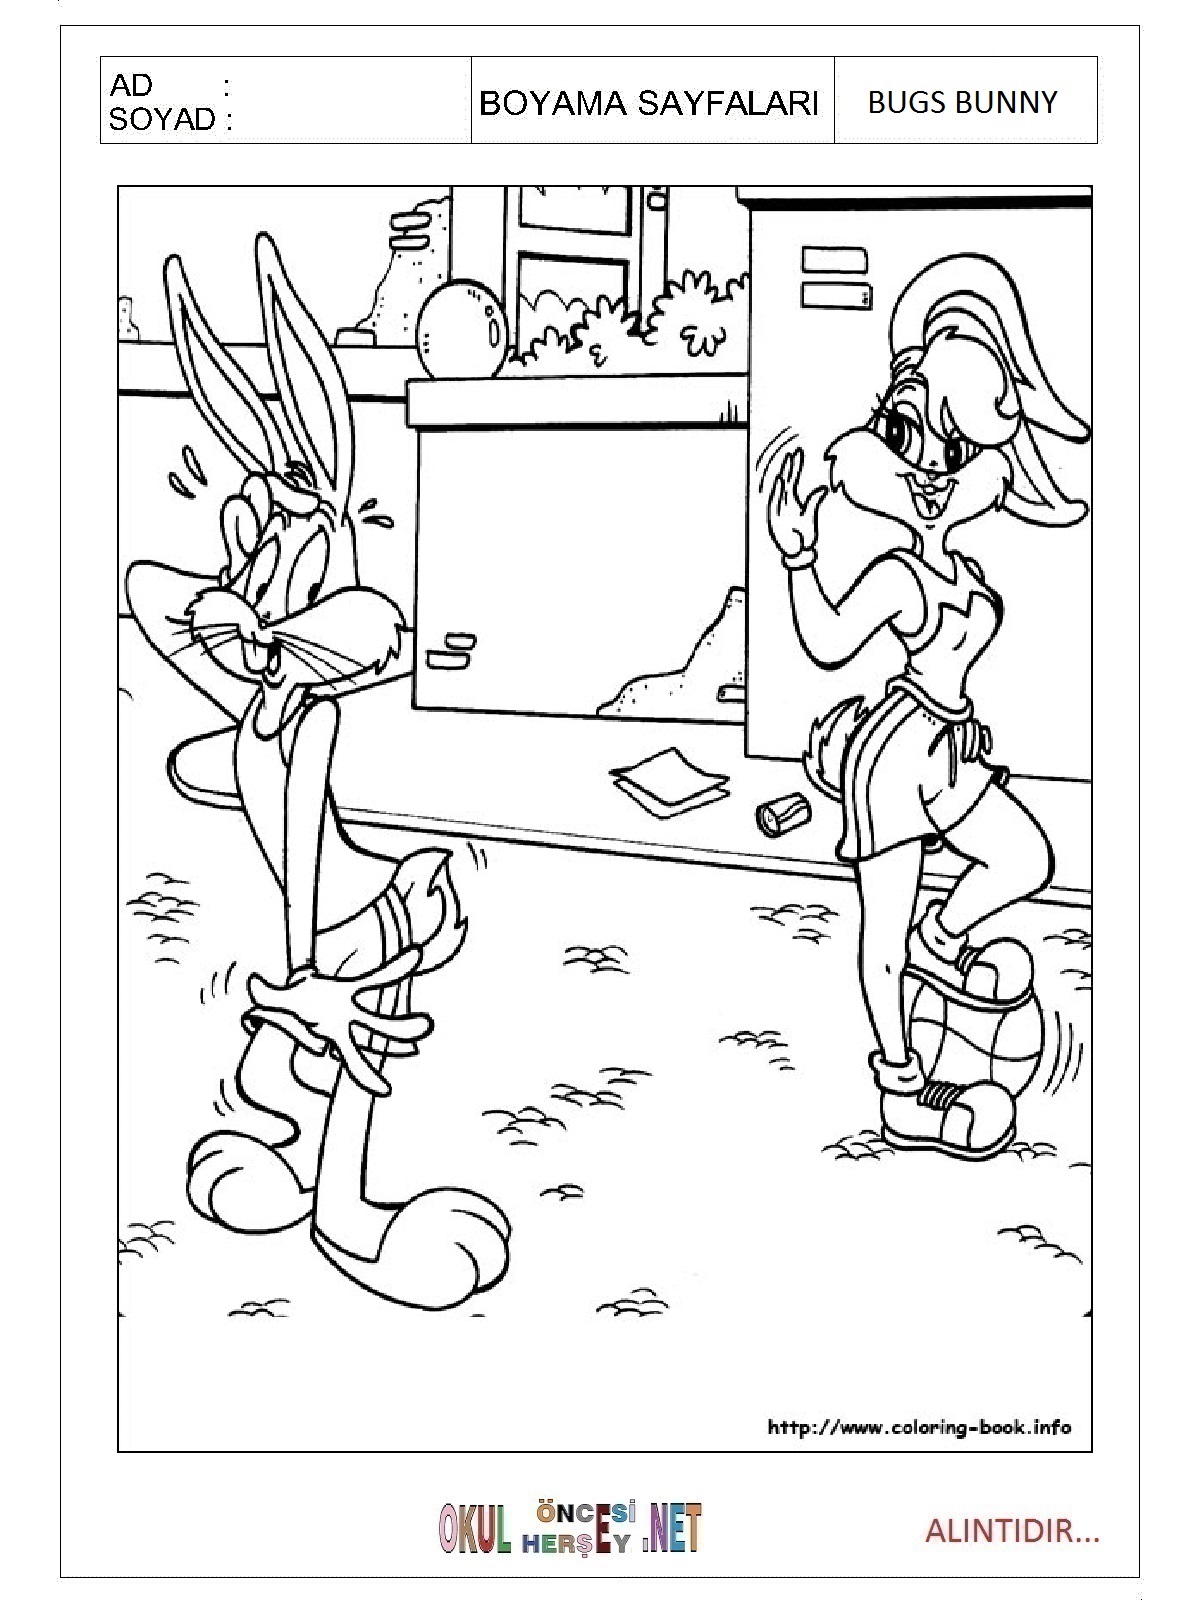 Bugs Bunny boyama sayfaları 